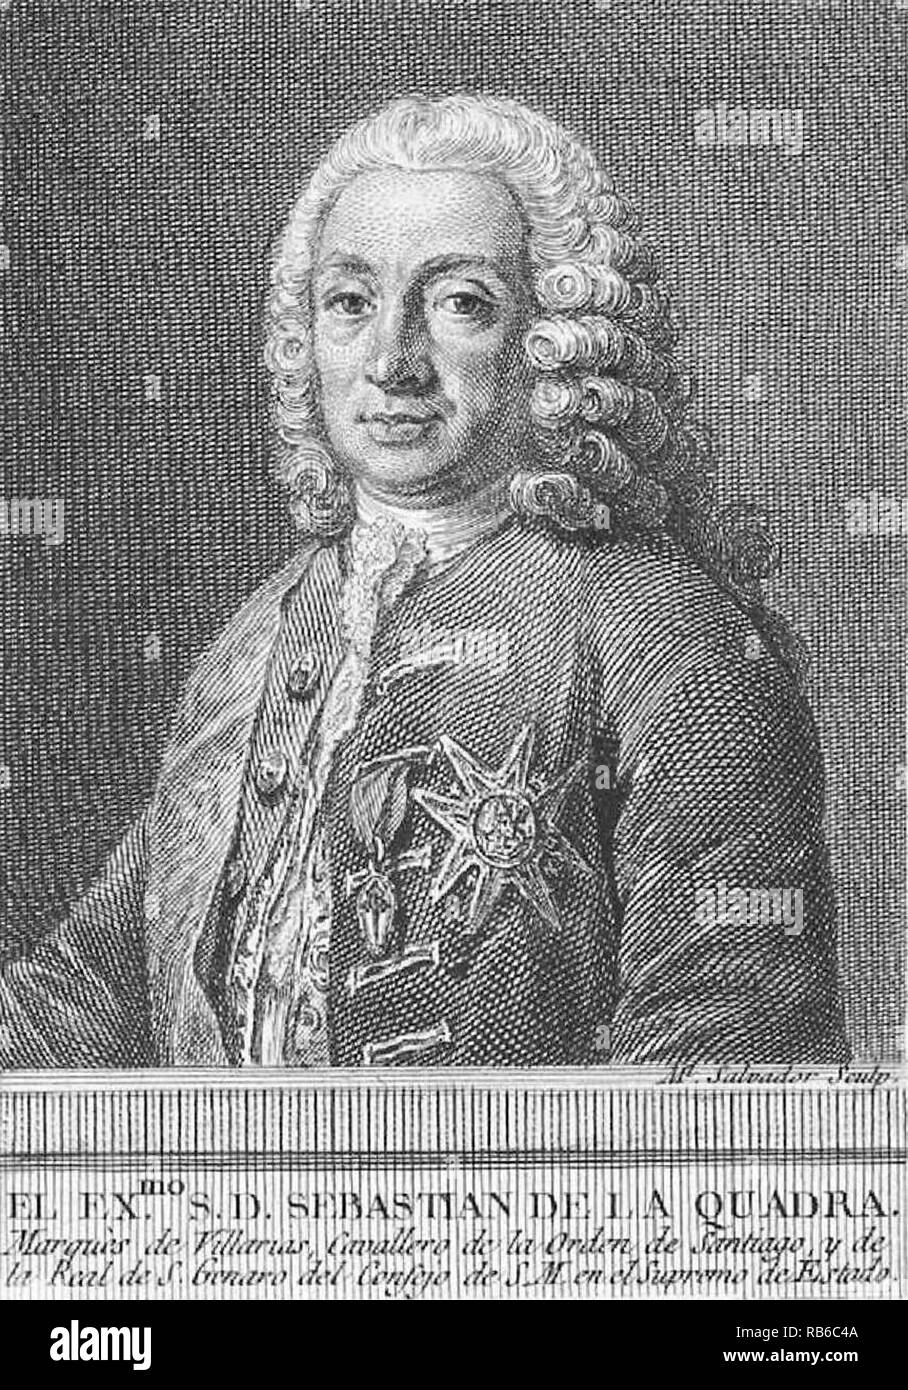 Sebastián de la Cuadra y Llarena, 1er marquis de Villarías (1687 - 1766) Homme d'État espagnol et le premier ministre de l'Espagne Banque D'Images